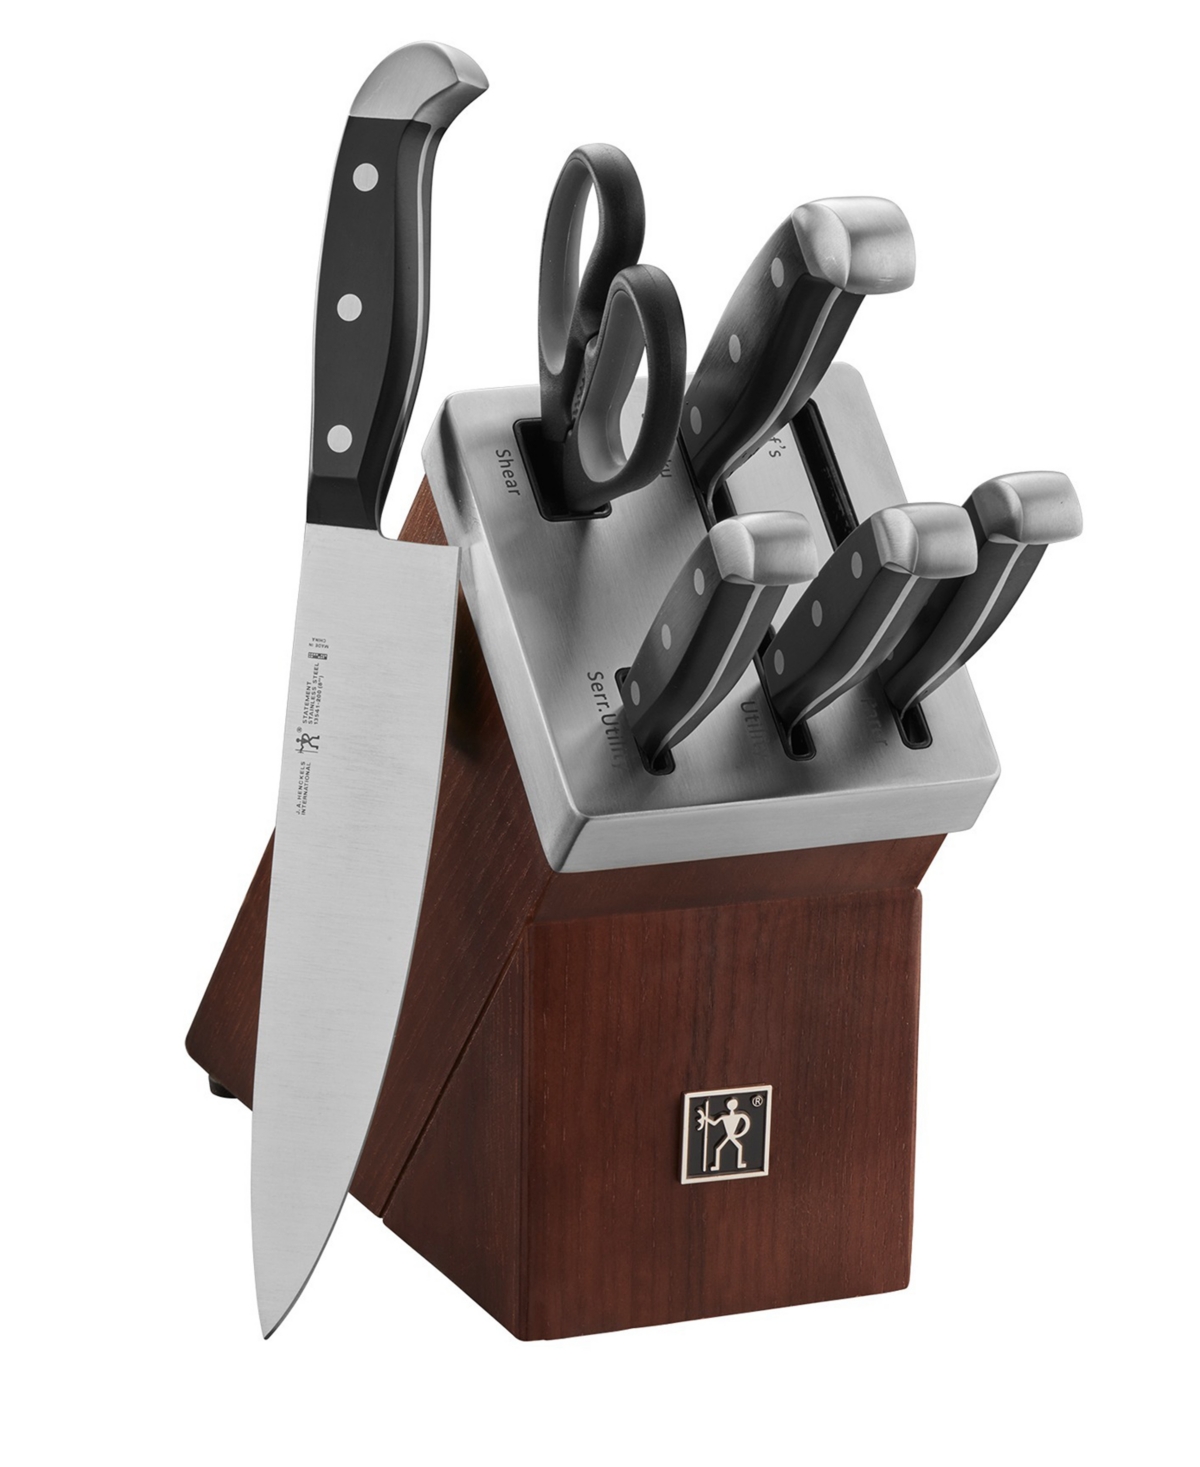 J.a. Henckels Statement 7-piece Self-sharpening Knife Block Set In Brown